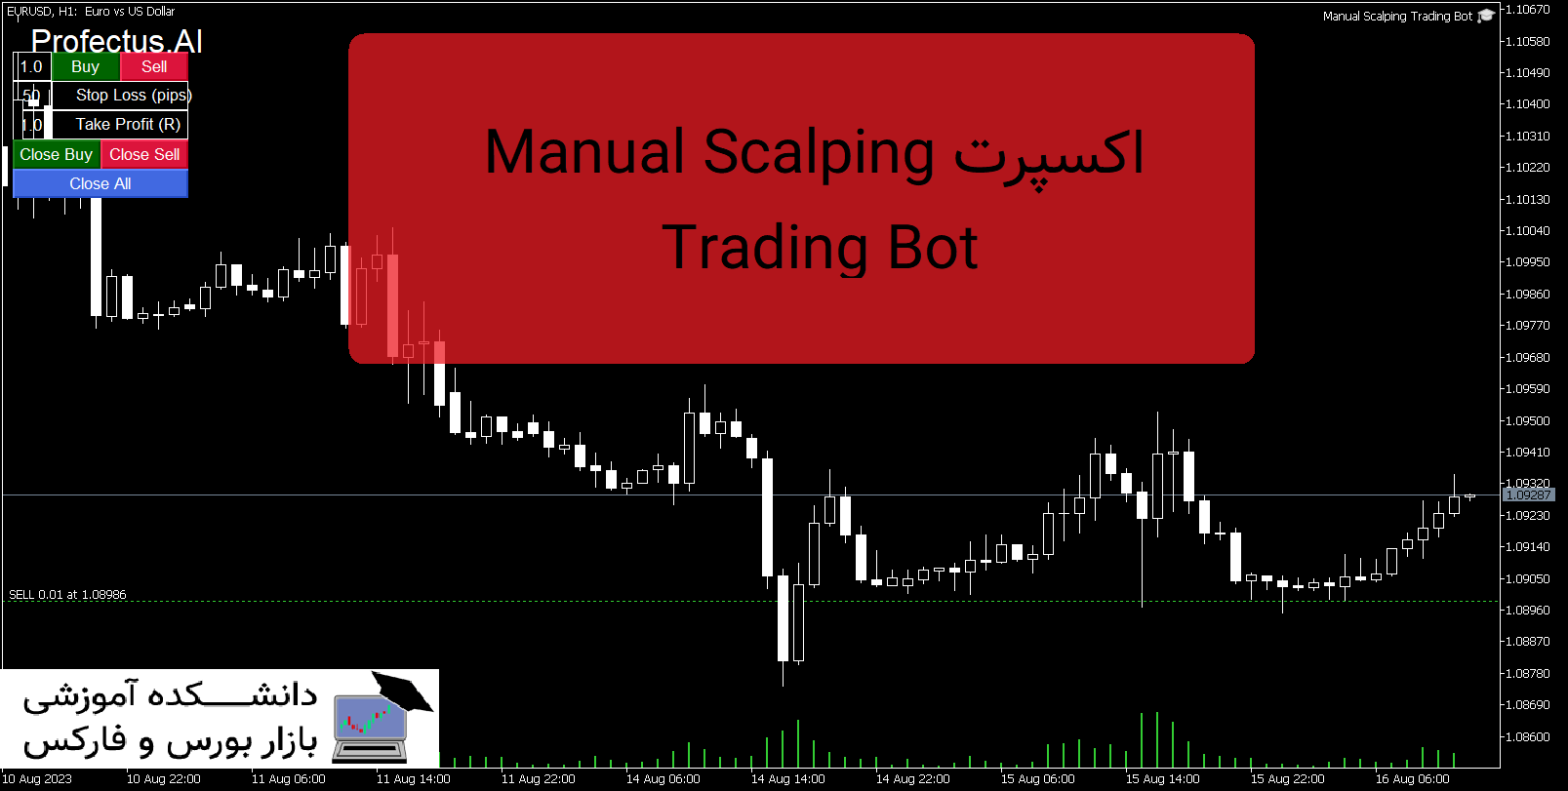 Manual Scalping Trading Bot دانلود اکسپرت